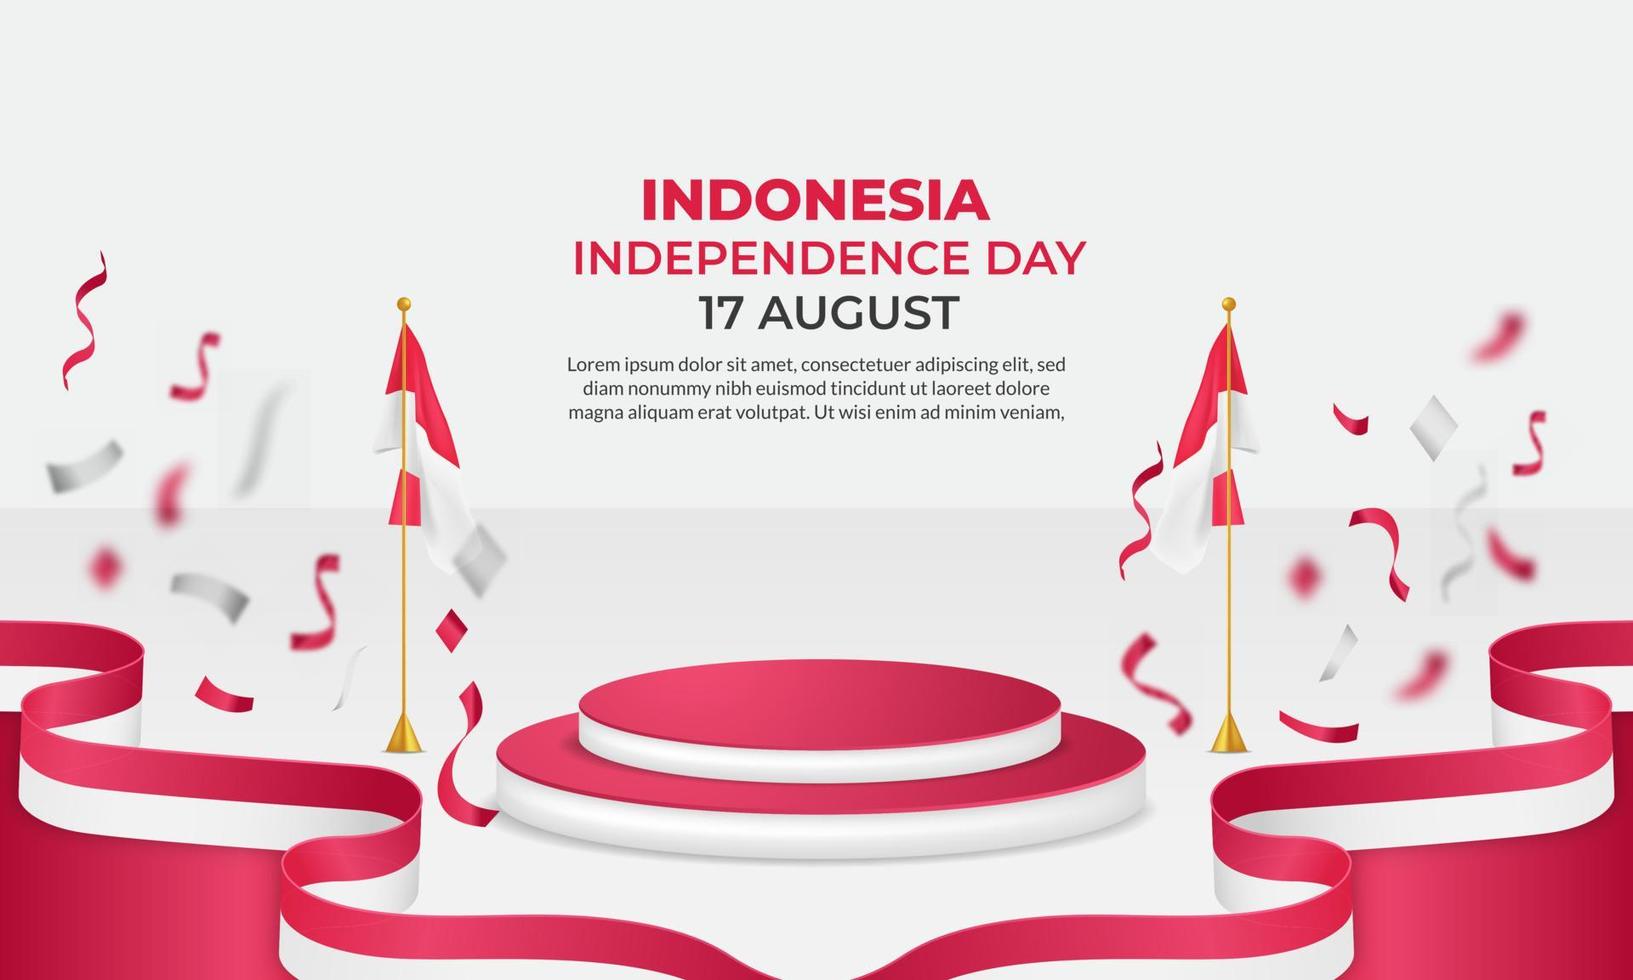 giorno dell'indipendenza dell'Indonesia. dirgahayu repubblica indonesiana. illustrazione, banner, poster, design di sfondo vettore